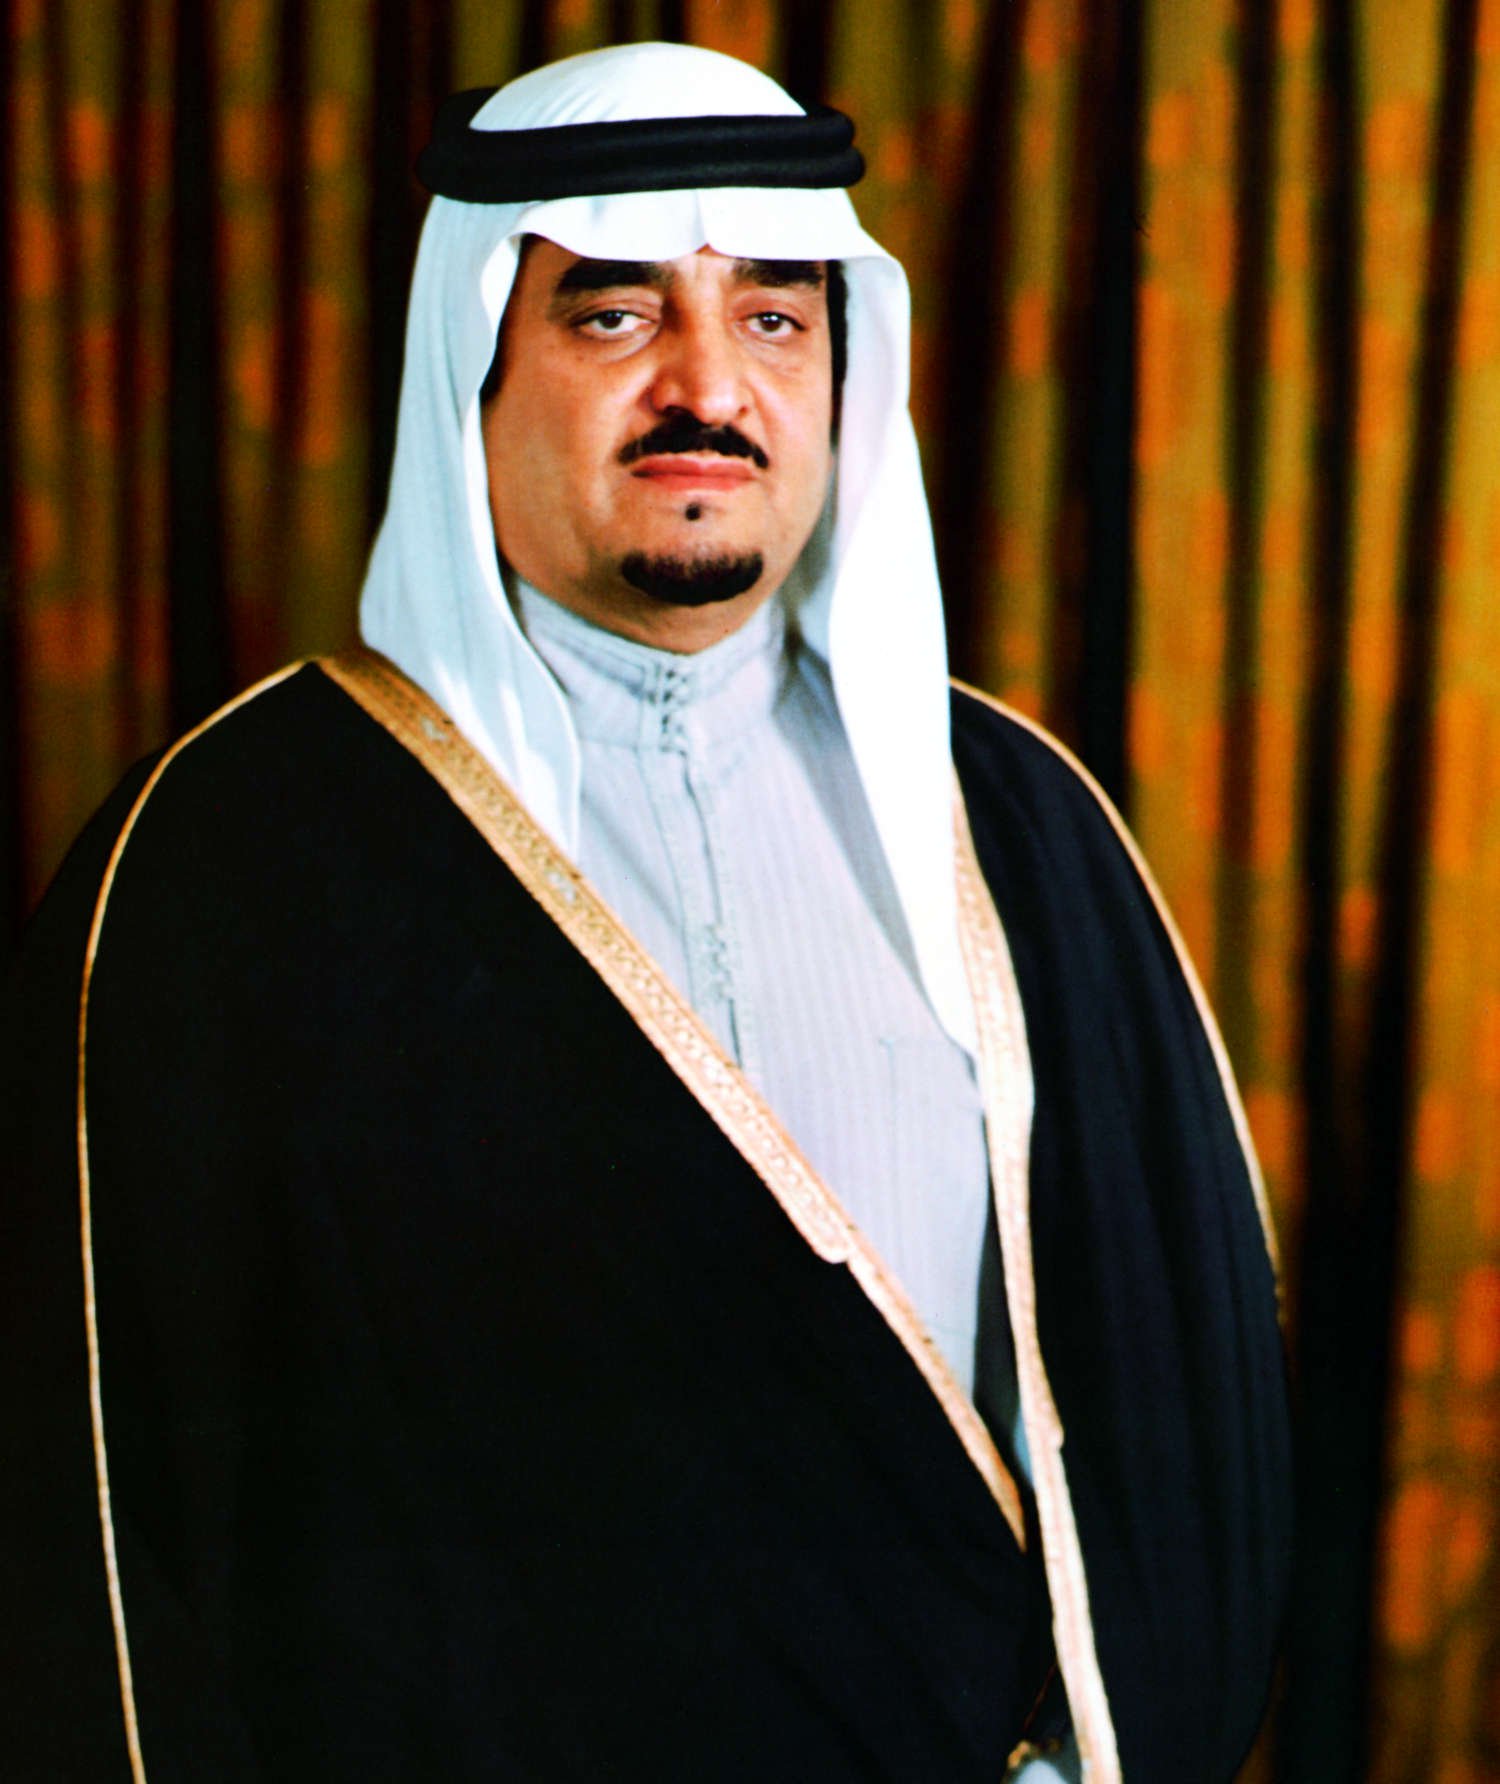 انشئ مجلس التعاون لدول الخليج العربية عام